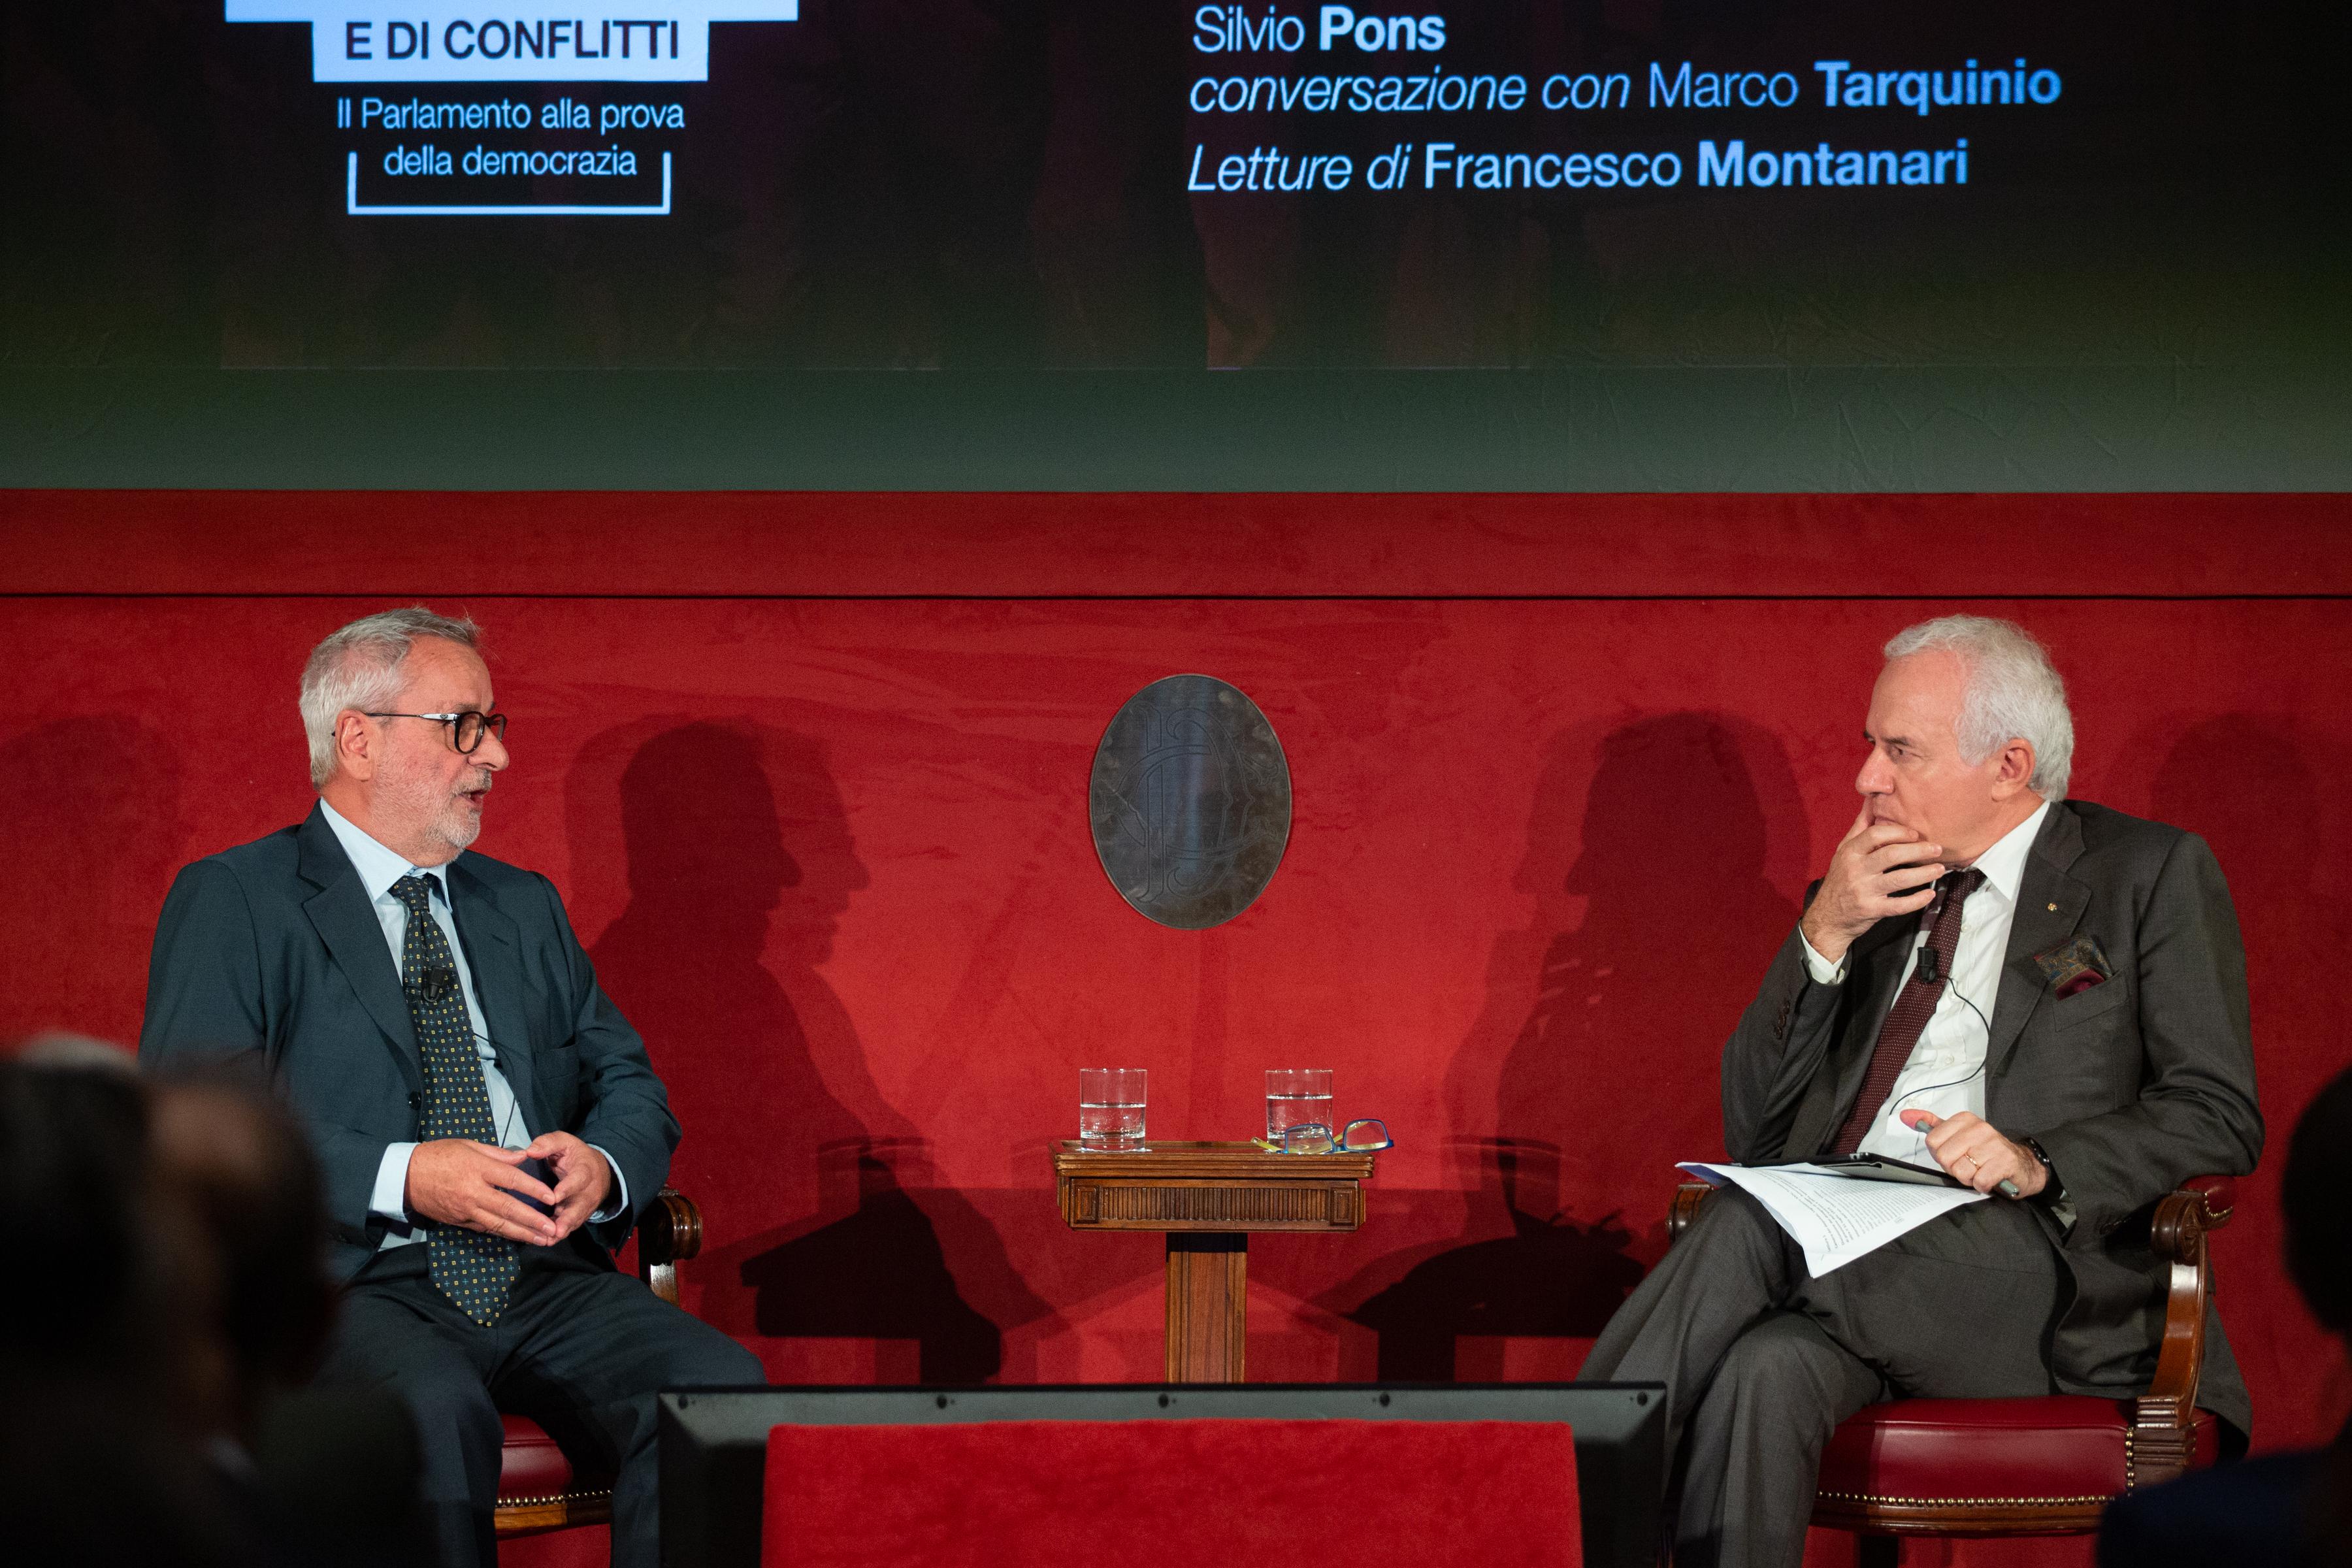 Conversazione tra il giornalista Marco Tarquinio e lo storico Silvio Pons